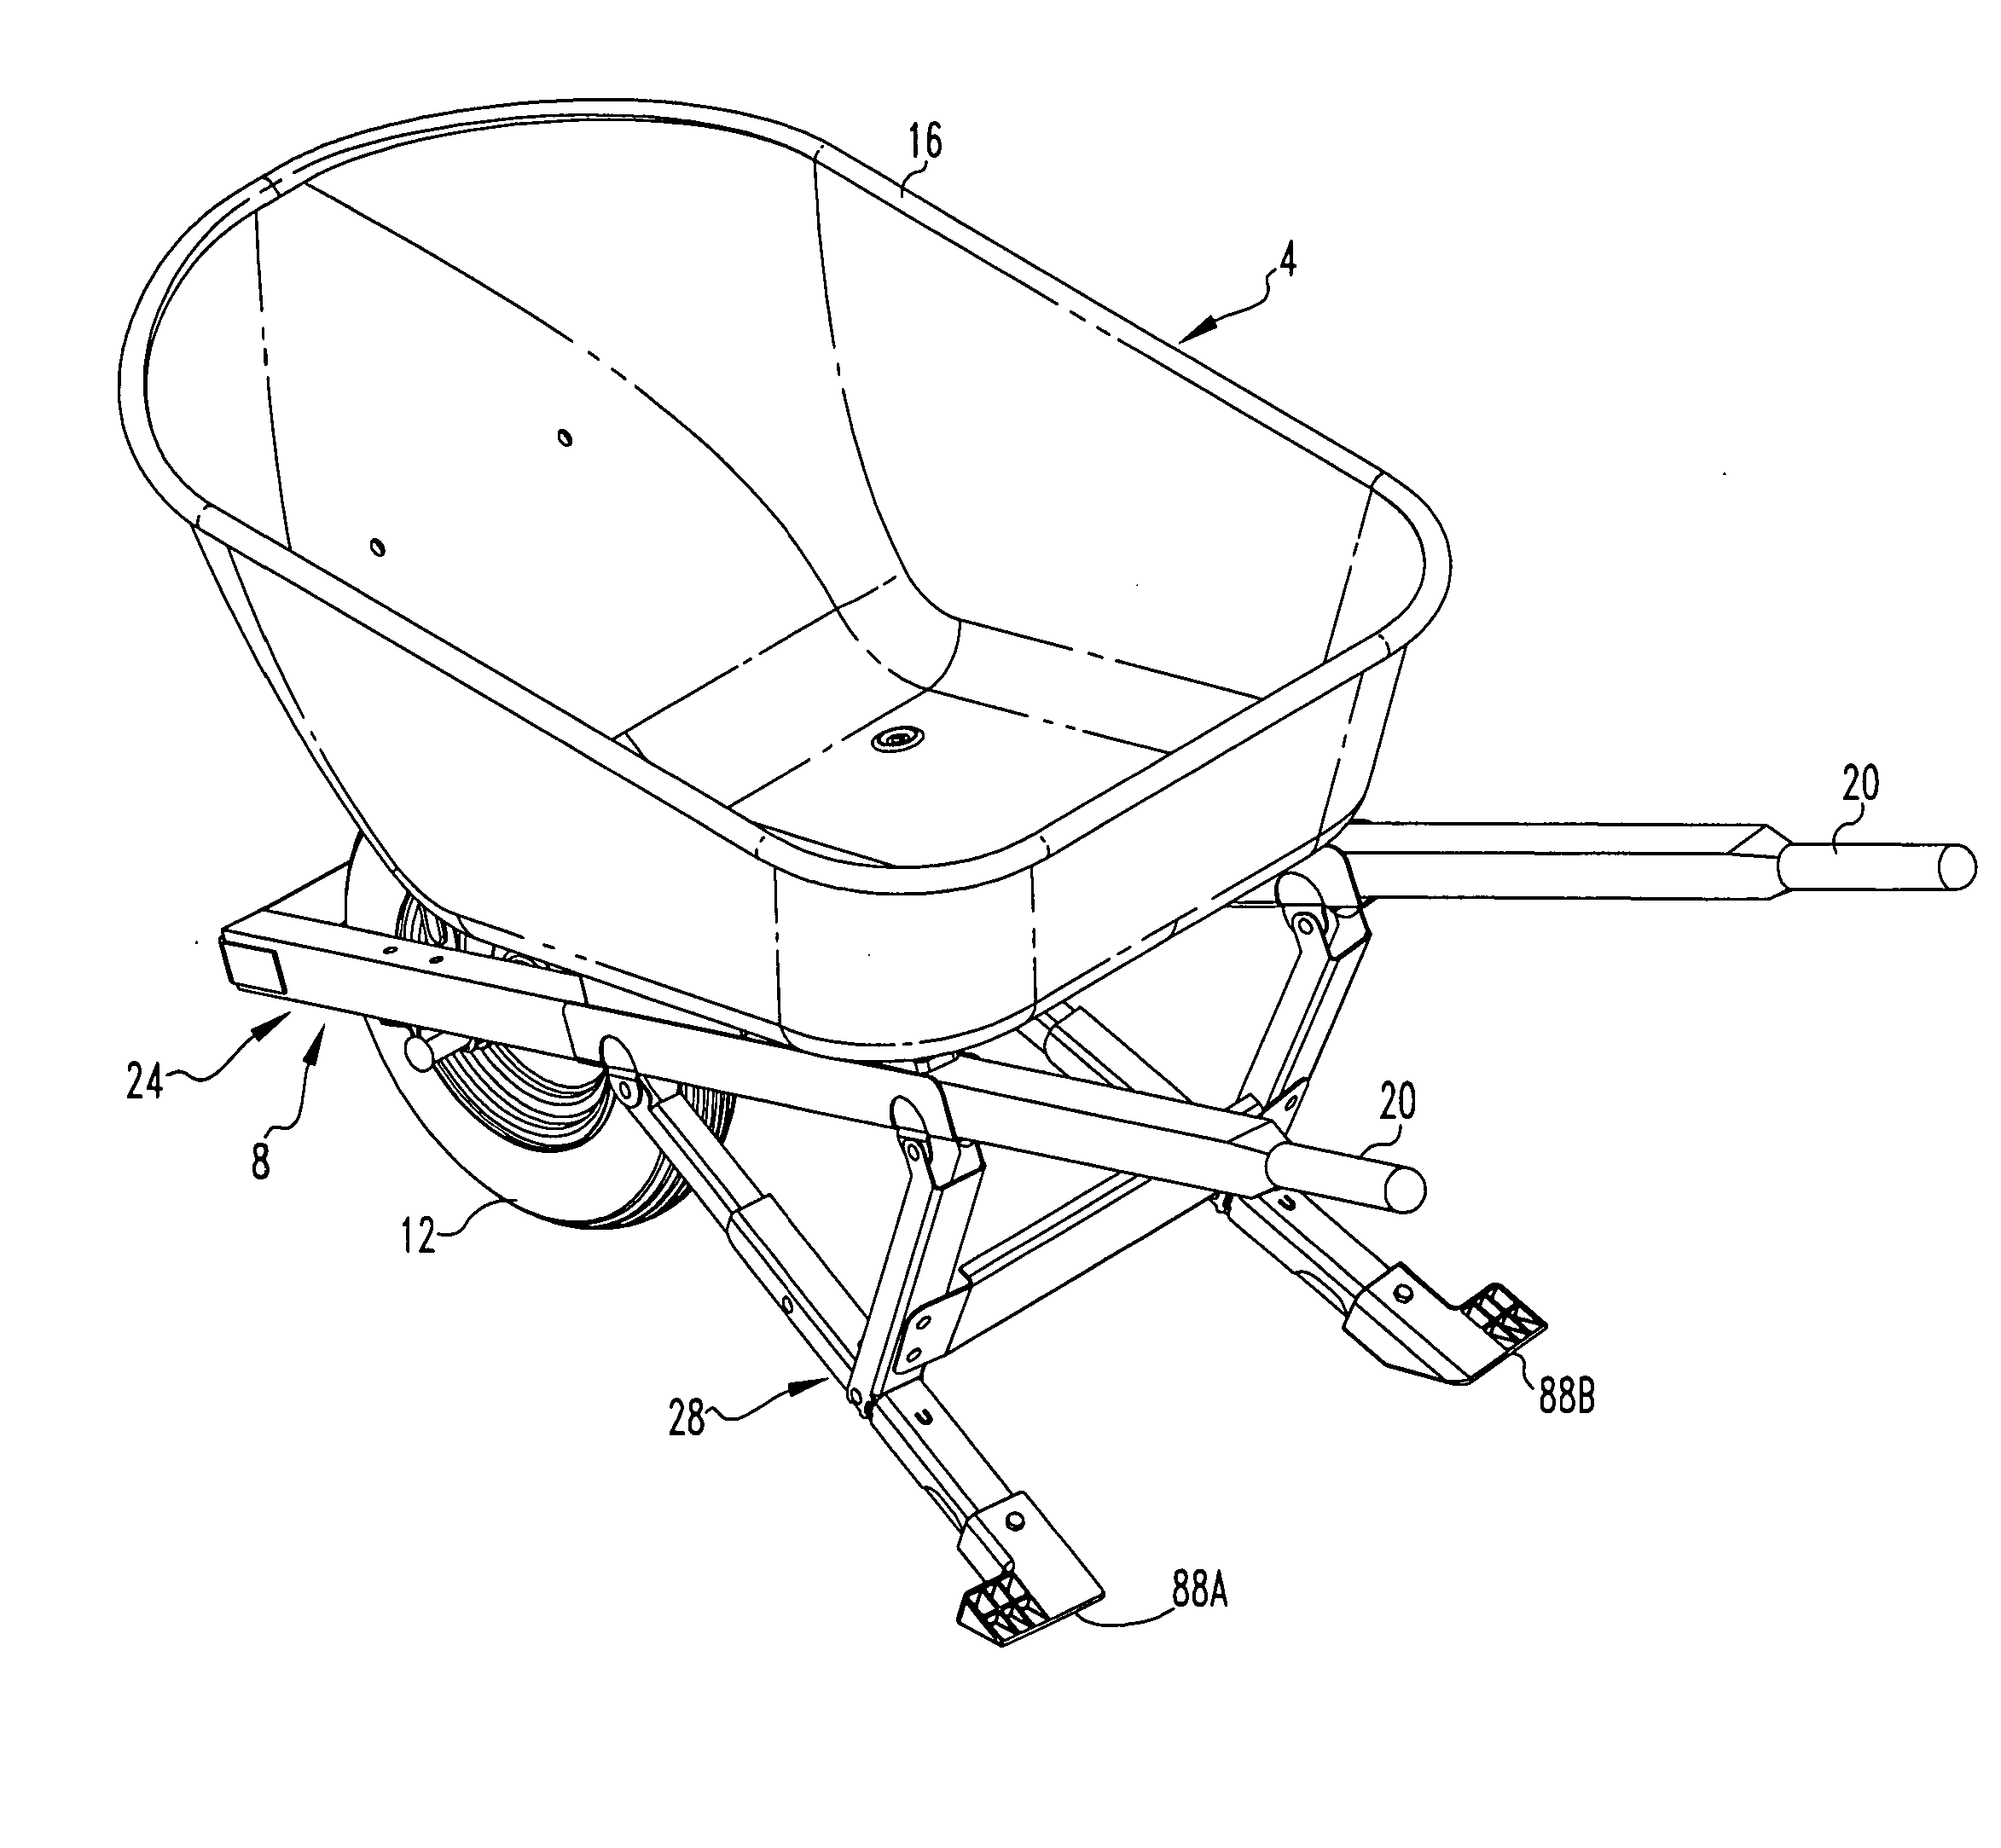 Collapsible wheelbarrow